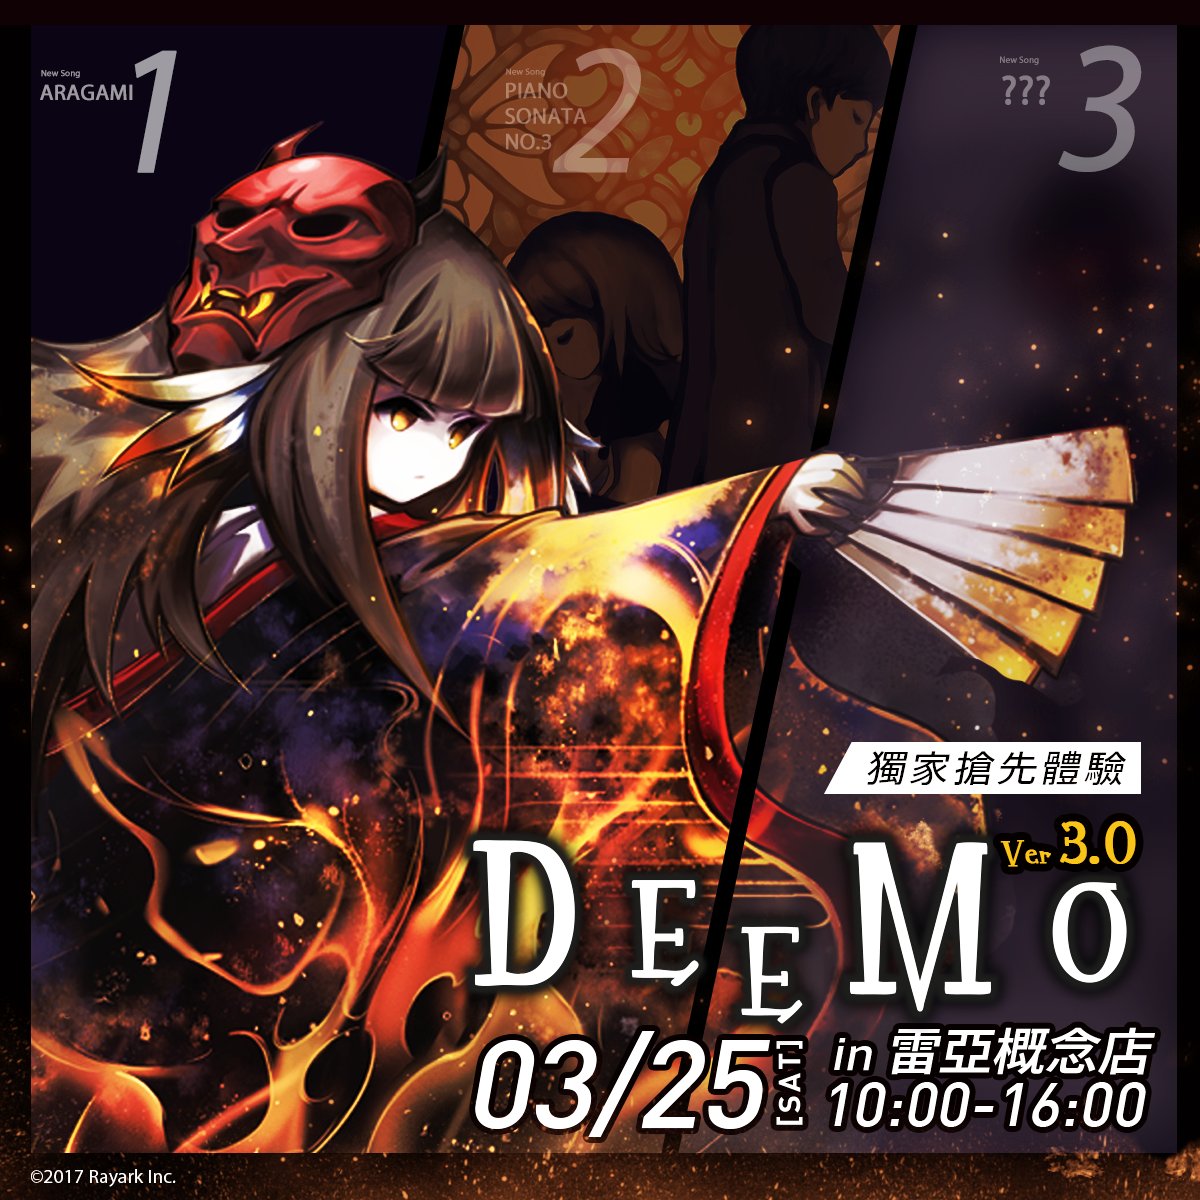 Deemo 公式 ついにdeemo3 0の試遊がやってきました リリースされる日も遠くないですね 시연 이벤트가 왔습니다 Deemo 3 0의 출시일이 얼마 남지 않았네요